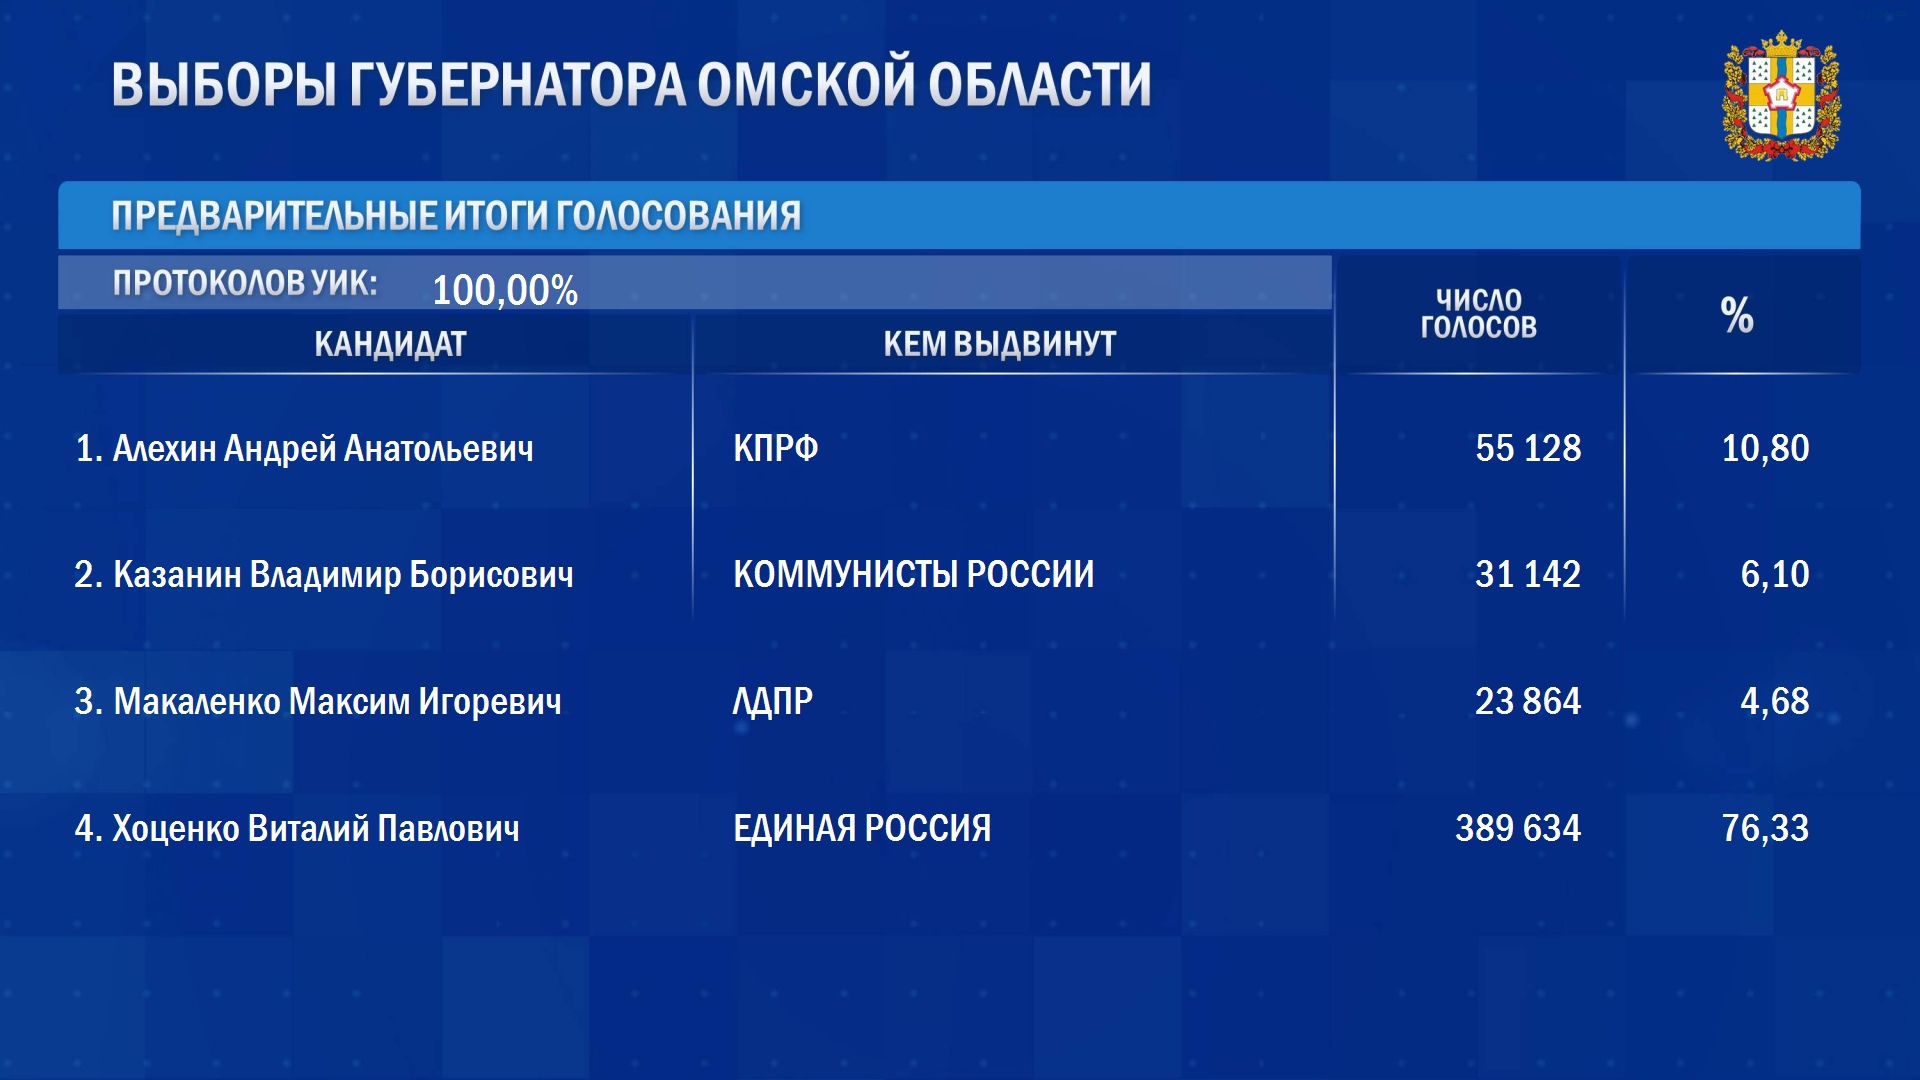 Стали известны окончательные итоги выборов губернатора Омской области #Омск #Общество #Сегодня